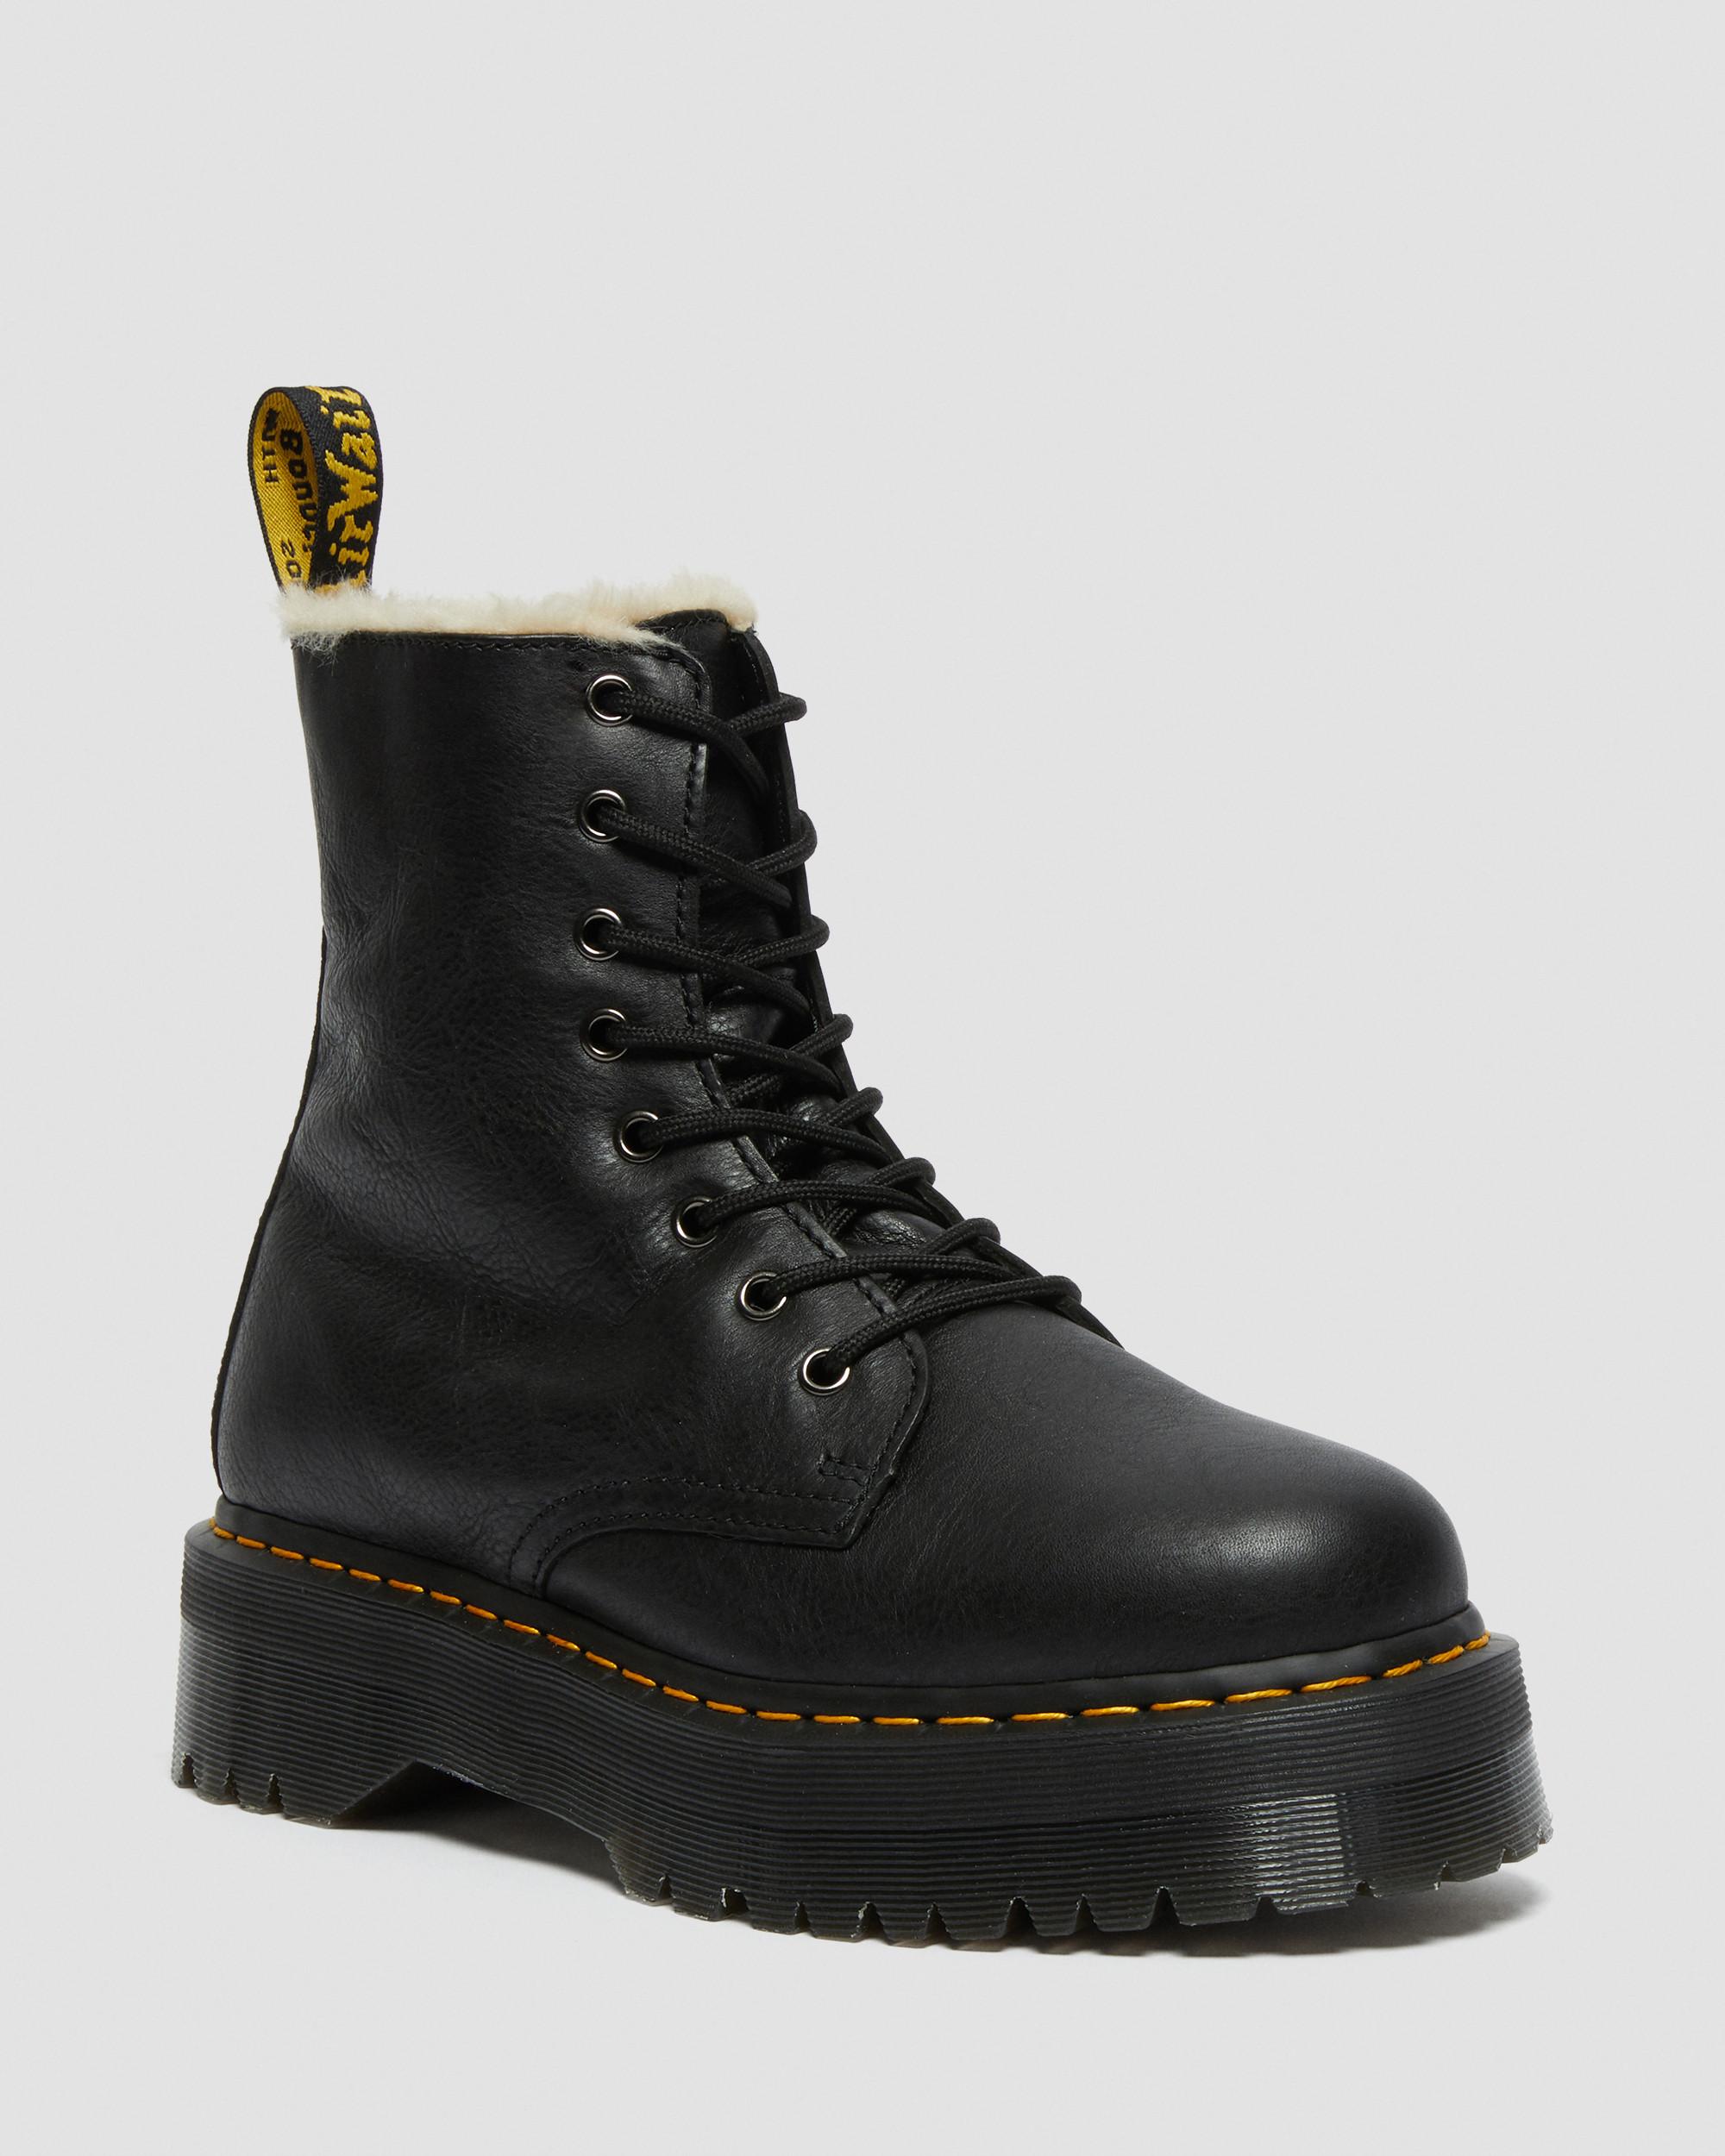 Jadon Boot Leather Faux Fur Lined Platforms in Black | Dr. Martens